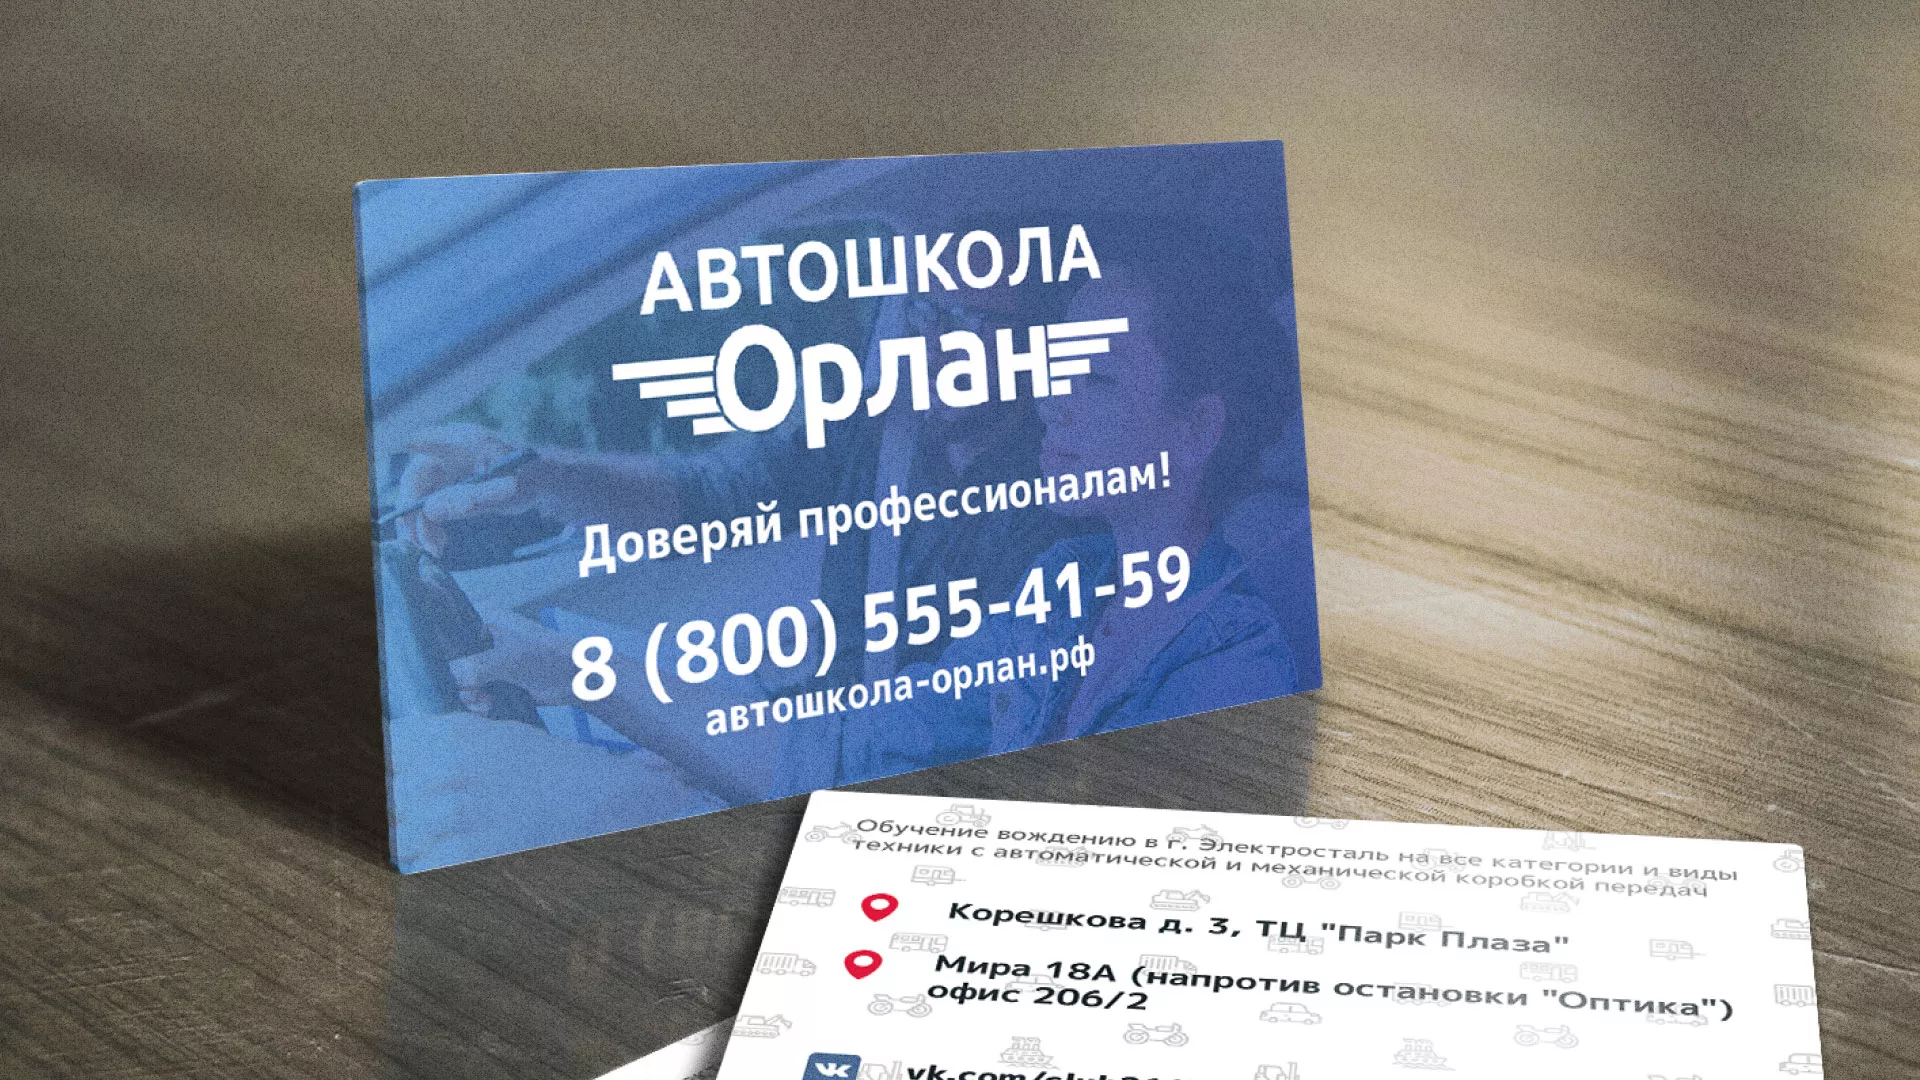 Дизайн рекламных визиток для автошколы «Орлан» в Электроуглях